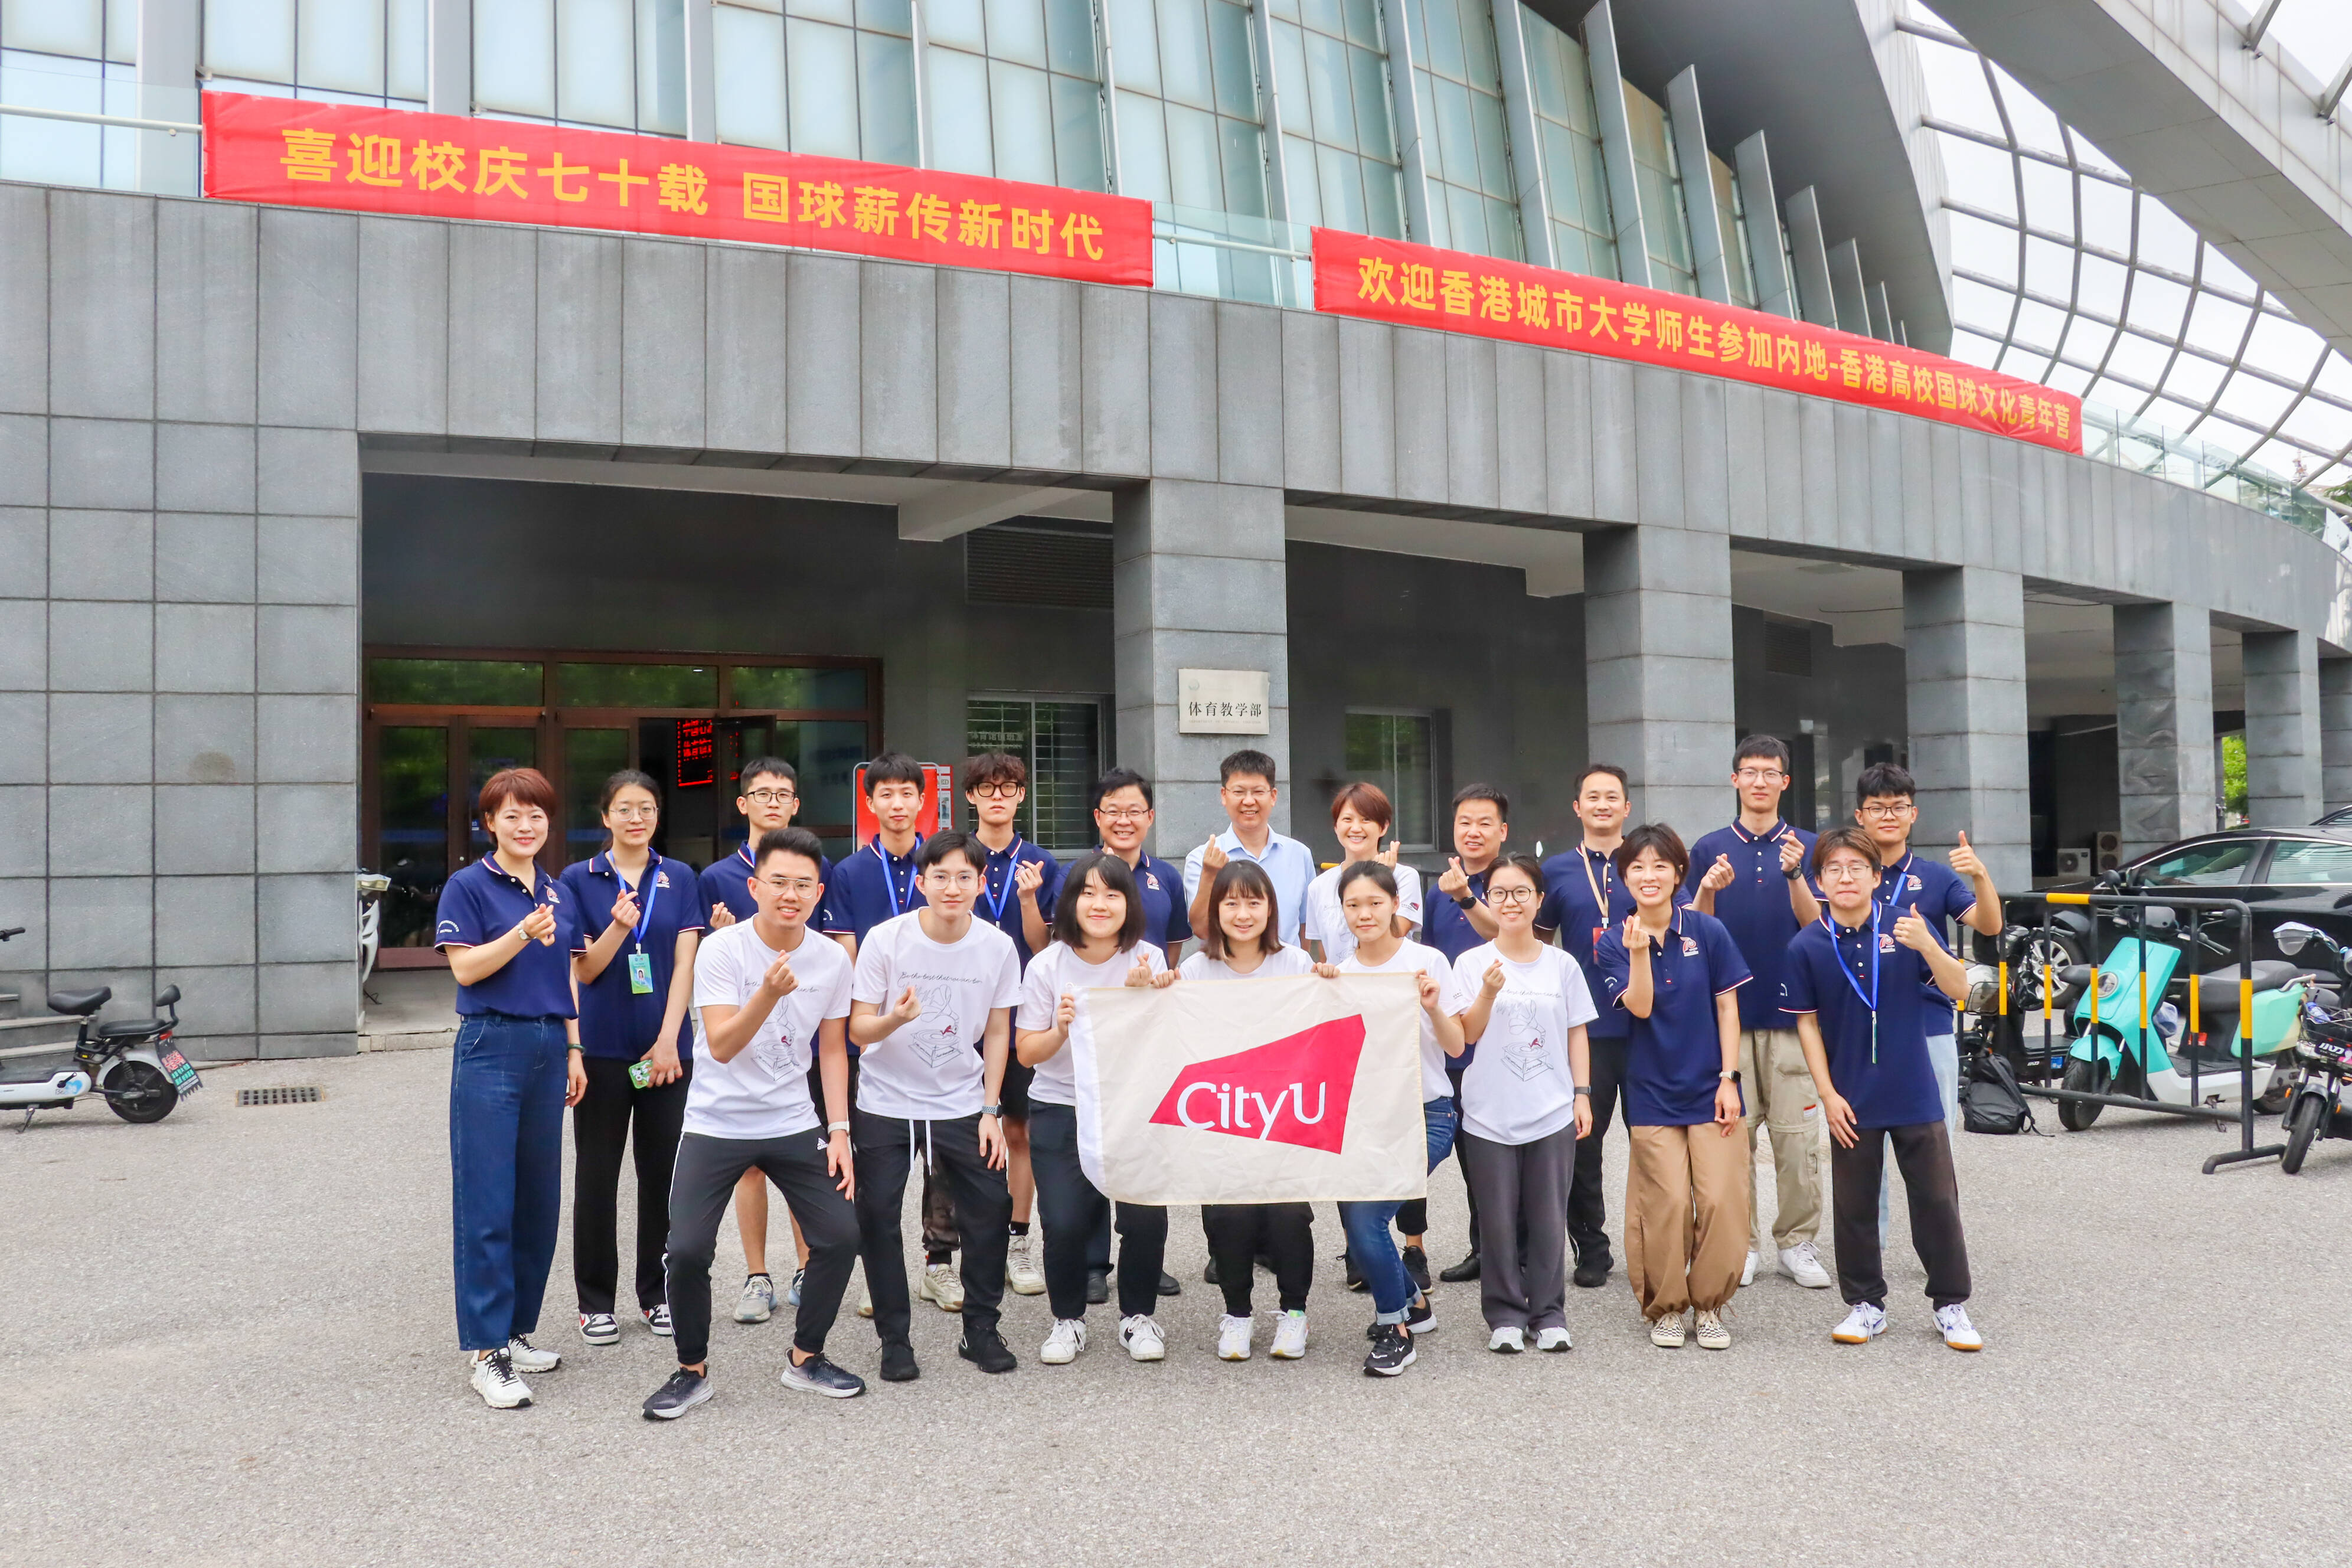 内地-香港高校国球文化青年营举行